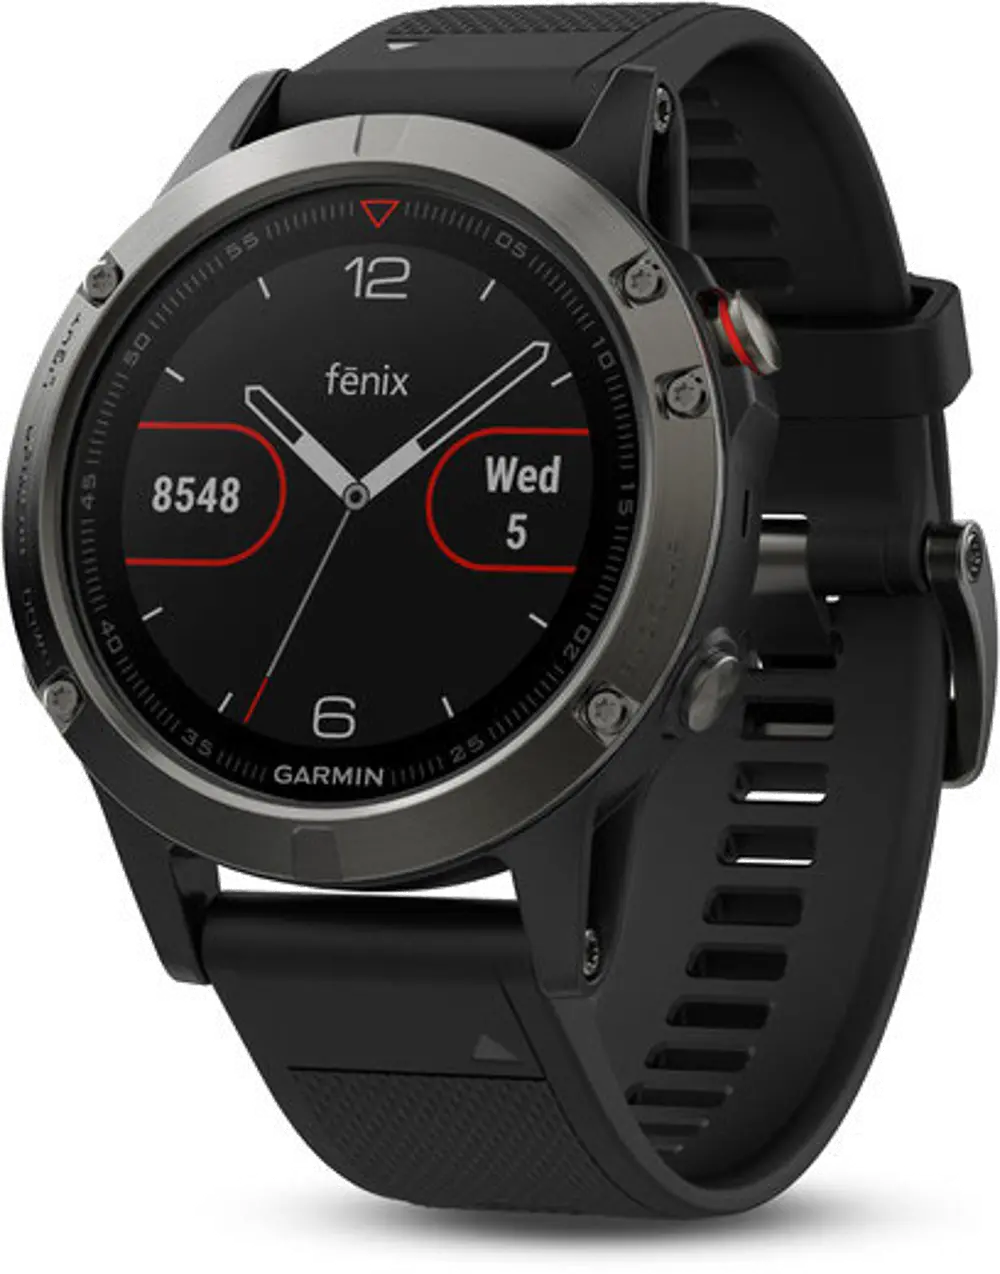 FENIX_5,SLATE-GRAY Garmin fēnix 5 Outdoor GPS Watch - Slate Gray-1